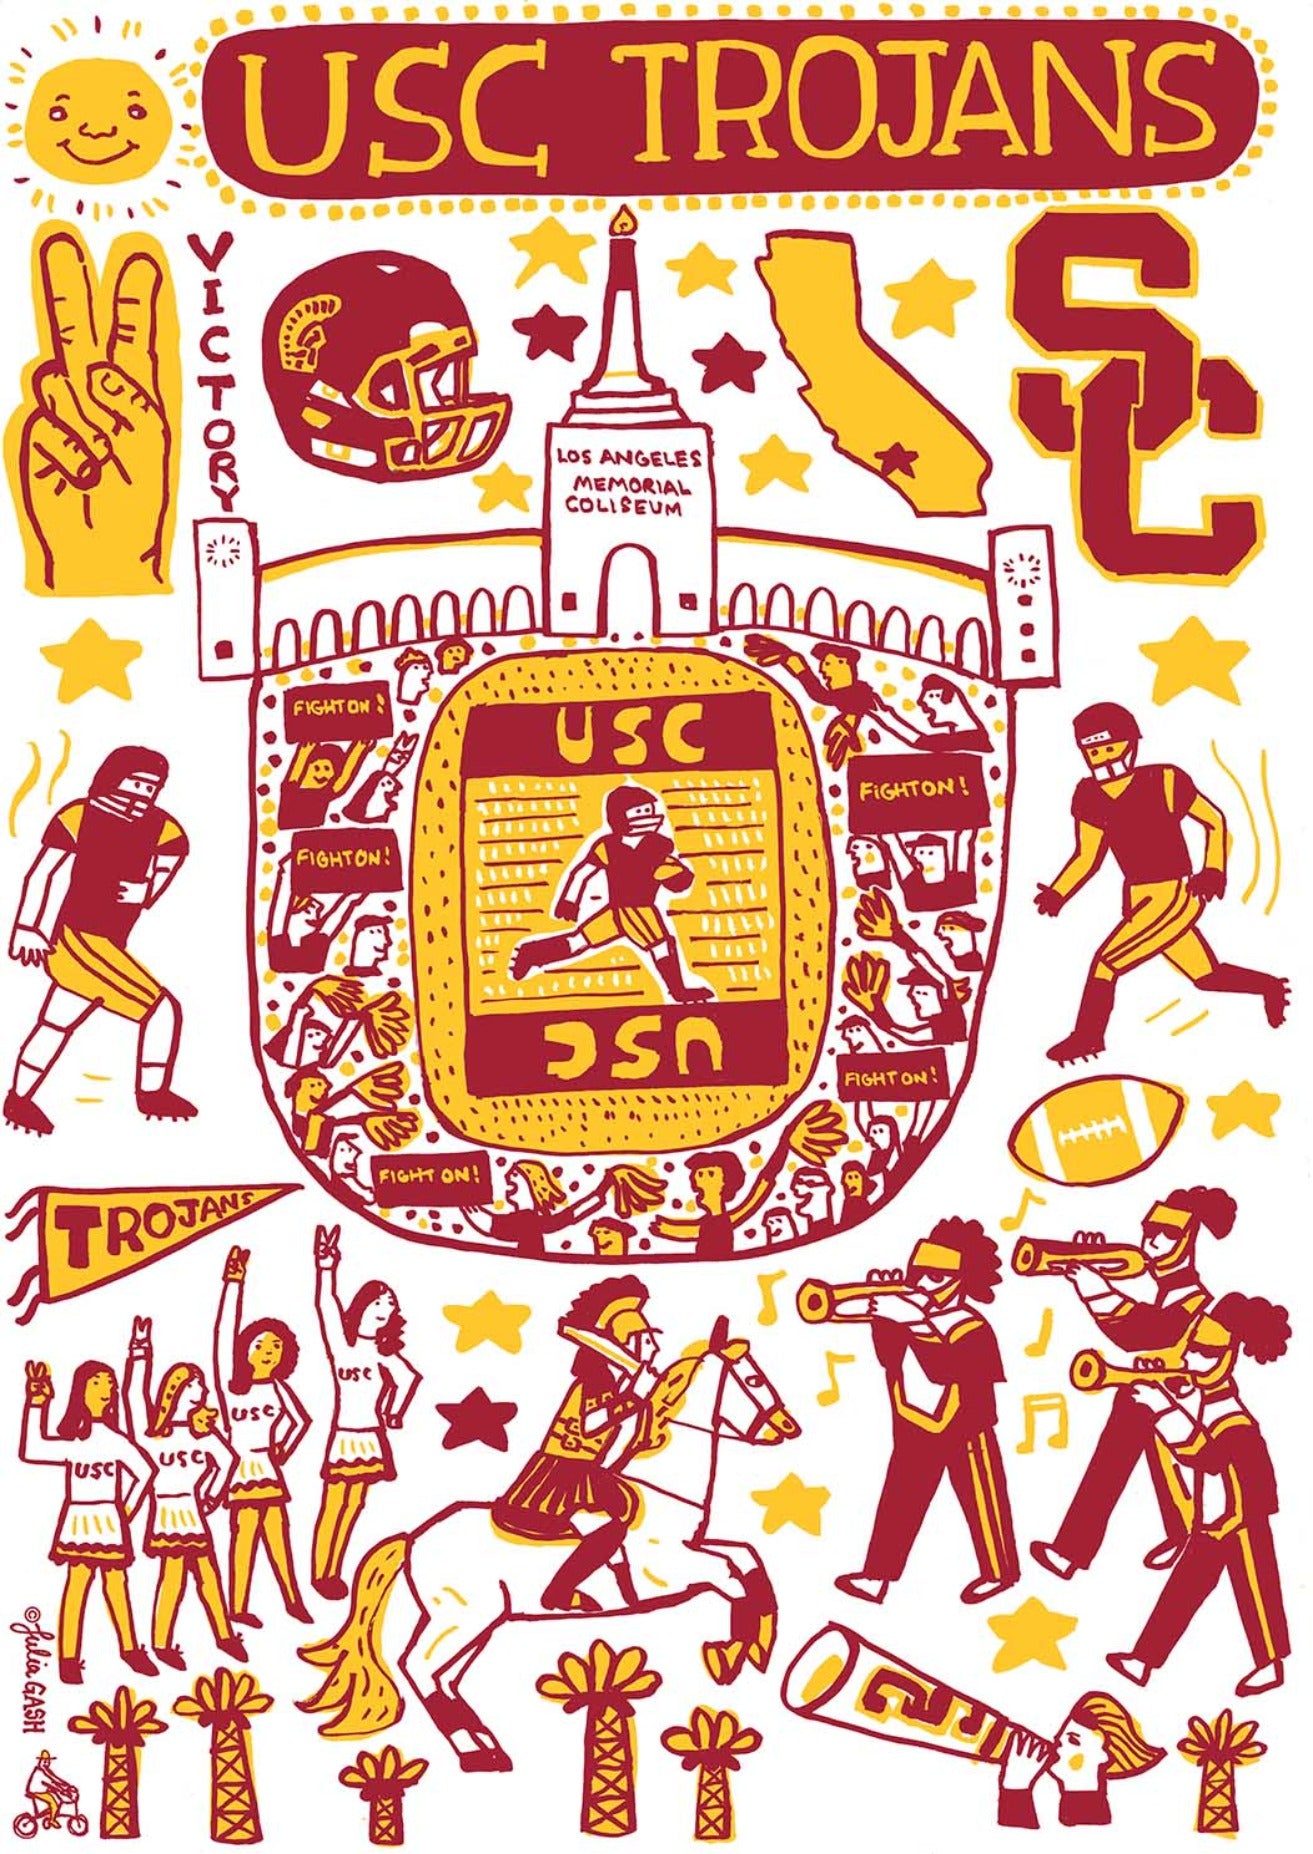 USC Trojans by Julia Gash